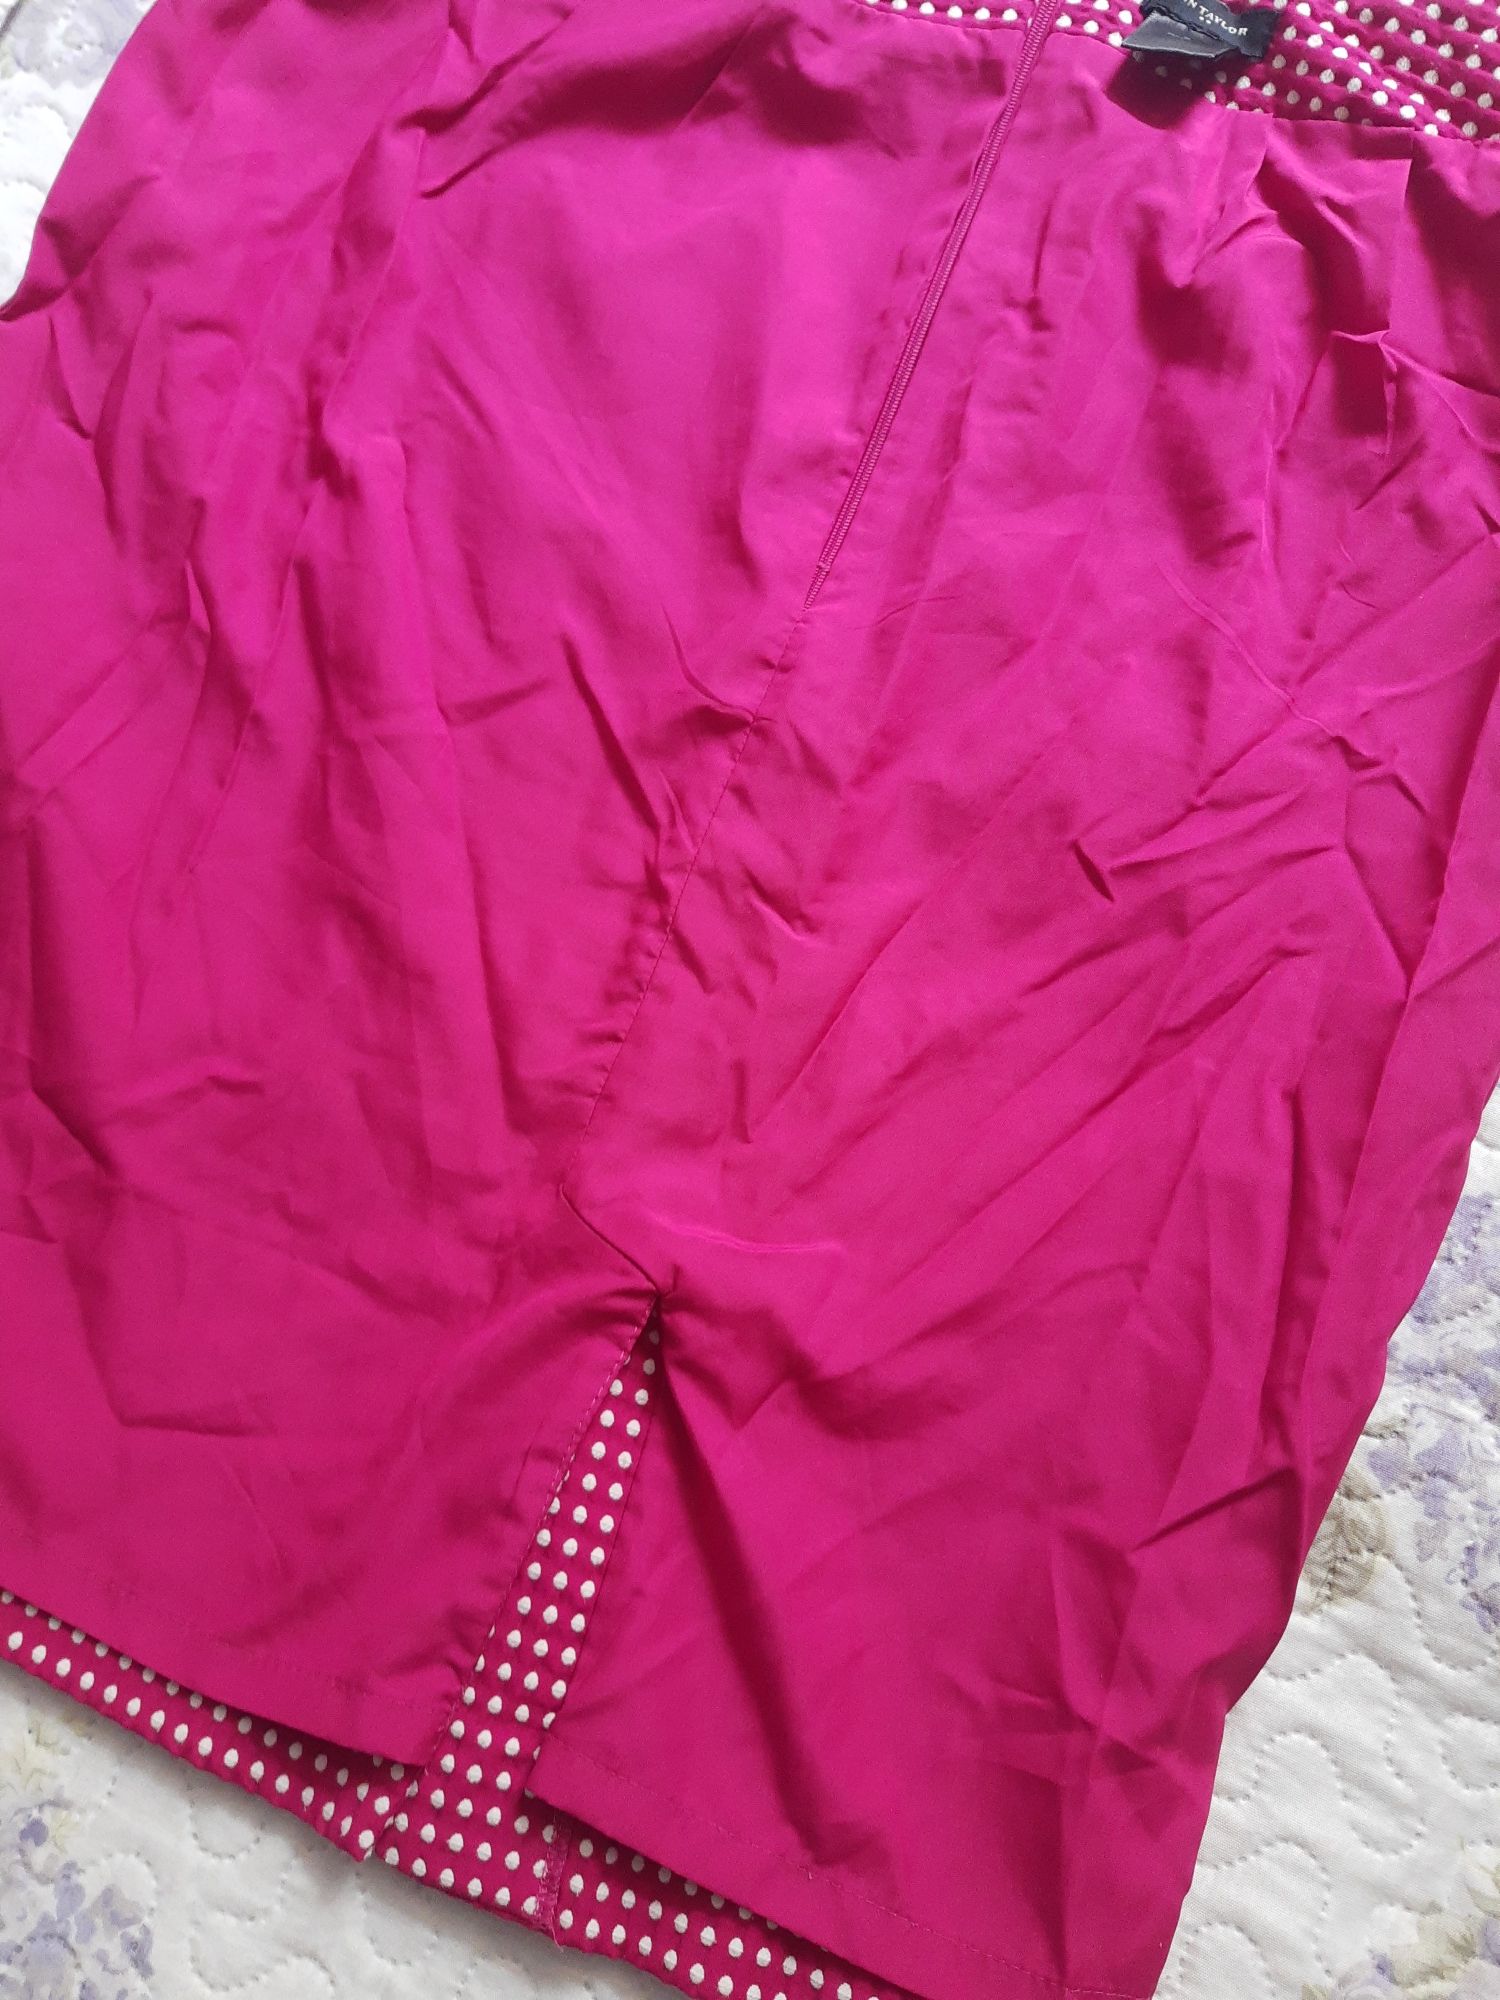 Różowa spódnica ołówkowa, dopasowana, w kropeczki, Ann Taylor, rozmiar